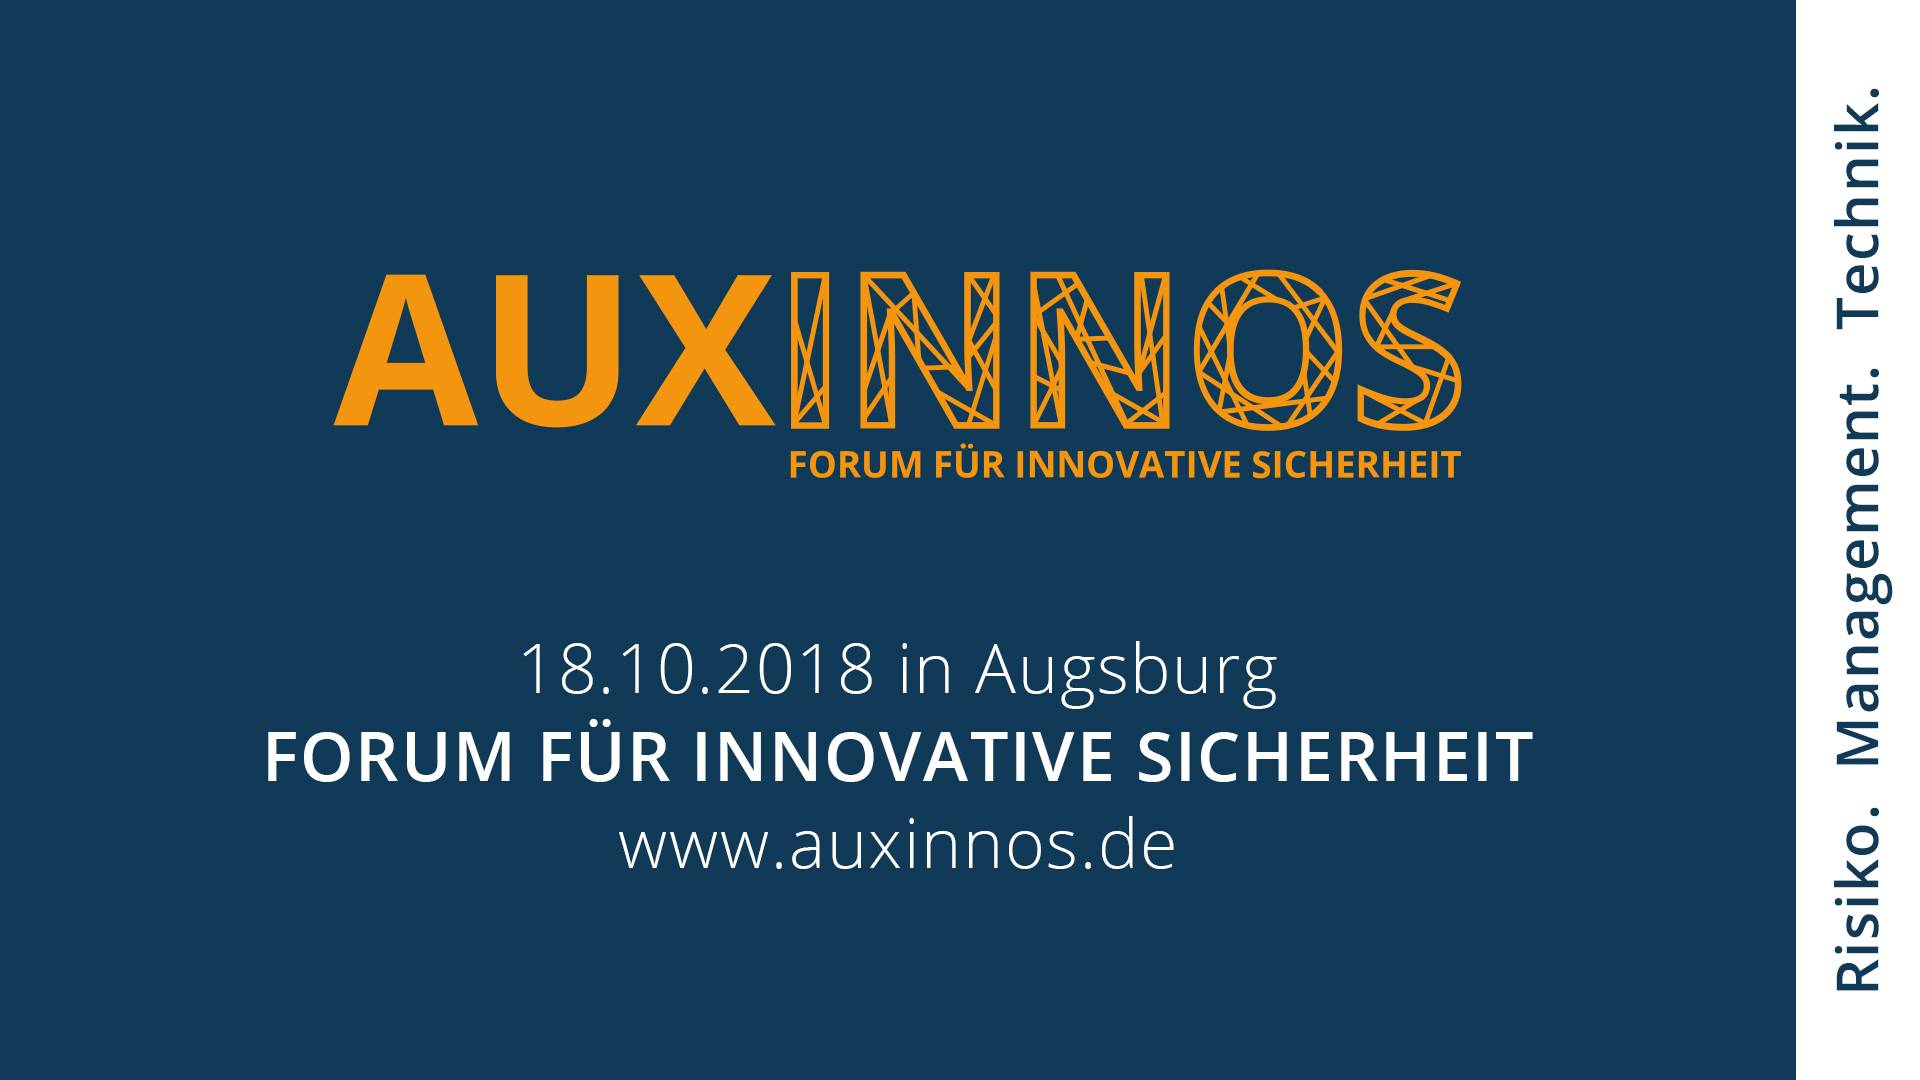 AUXINNOS Forum für innovative Sicherheit